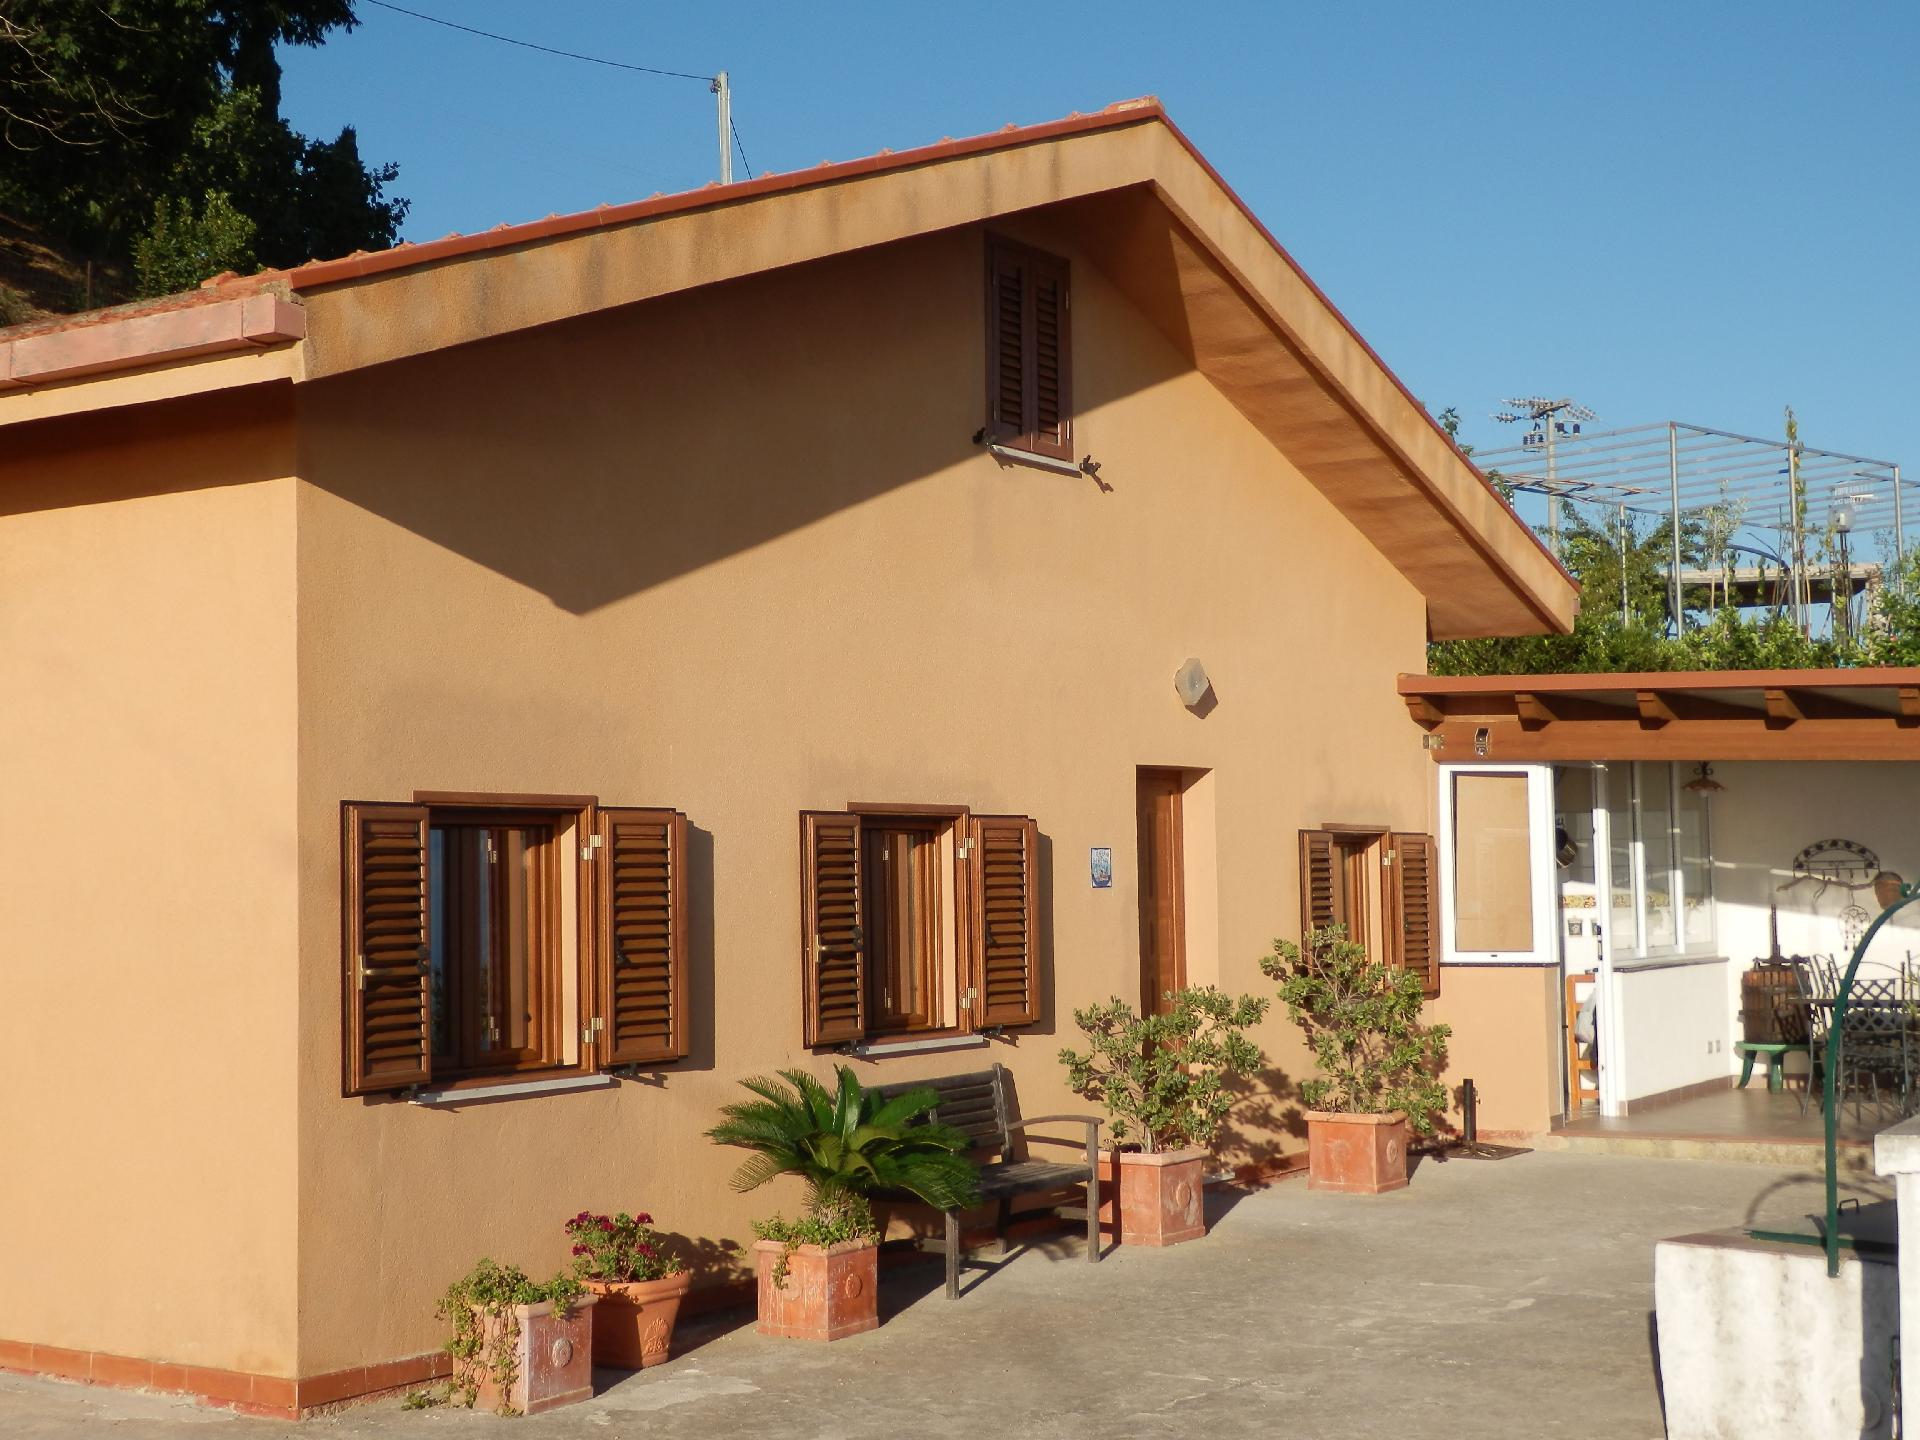 Ferienhaus für 4 Personen ca 70 m² in Cefalù Sizilien Nordküste von Sizilien